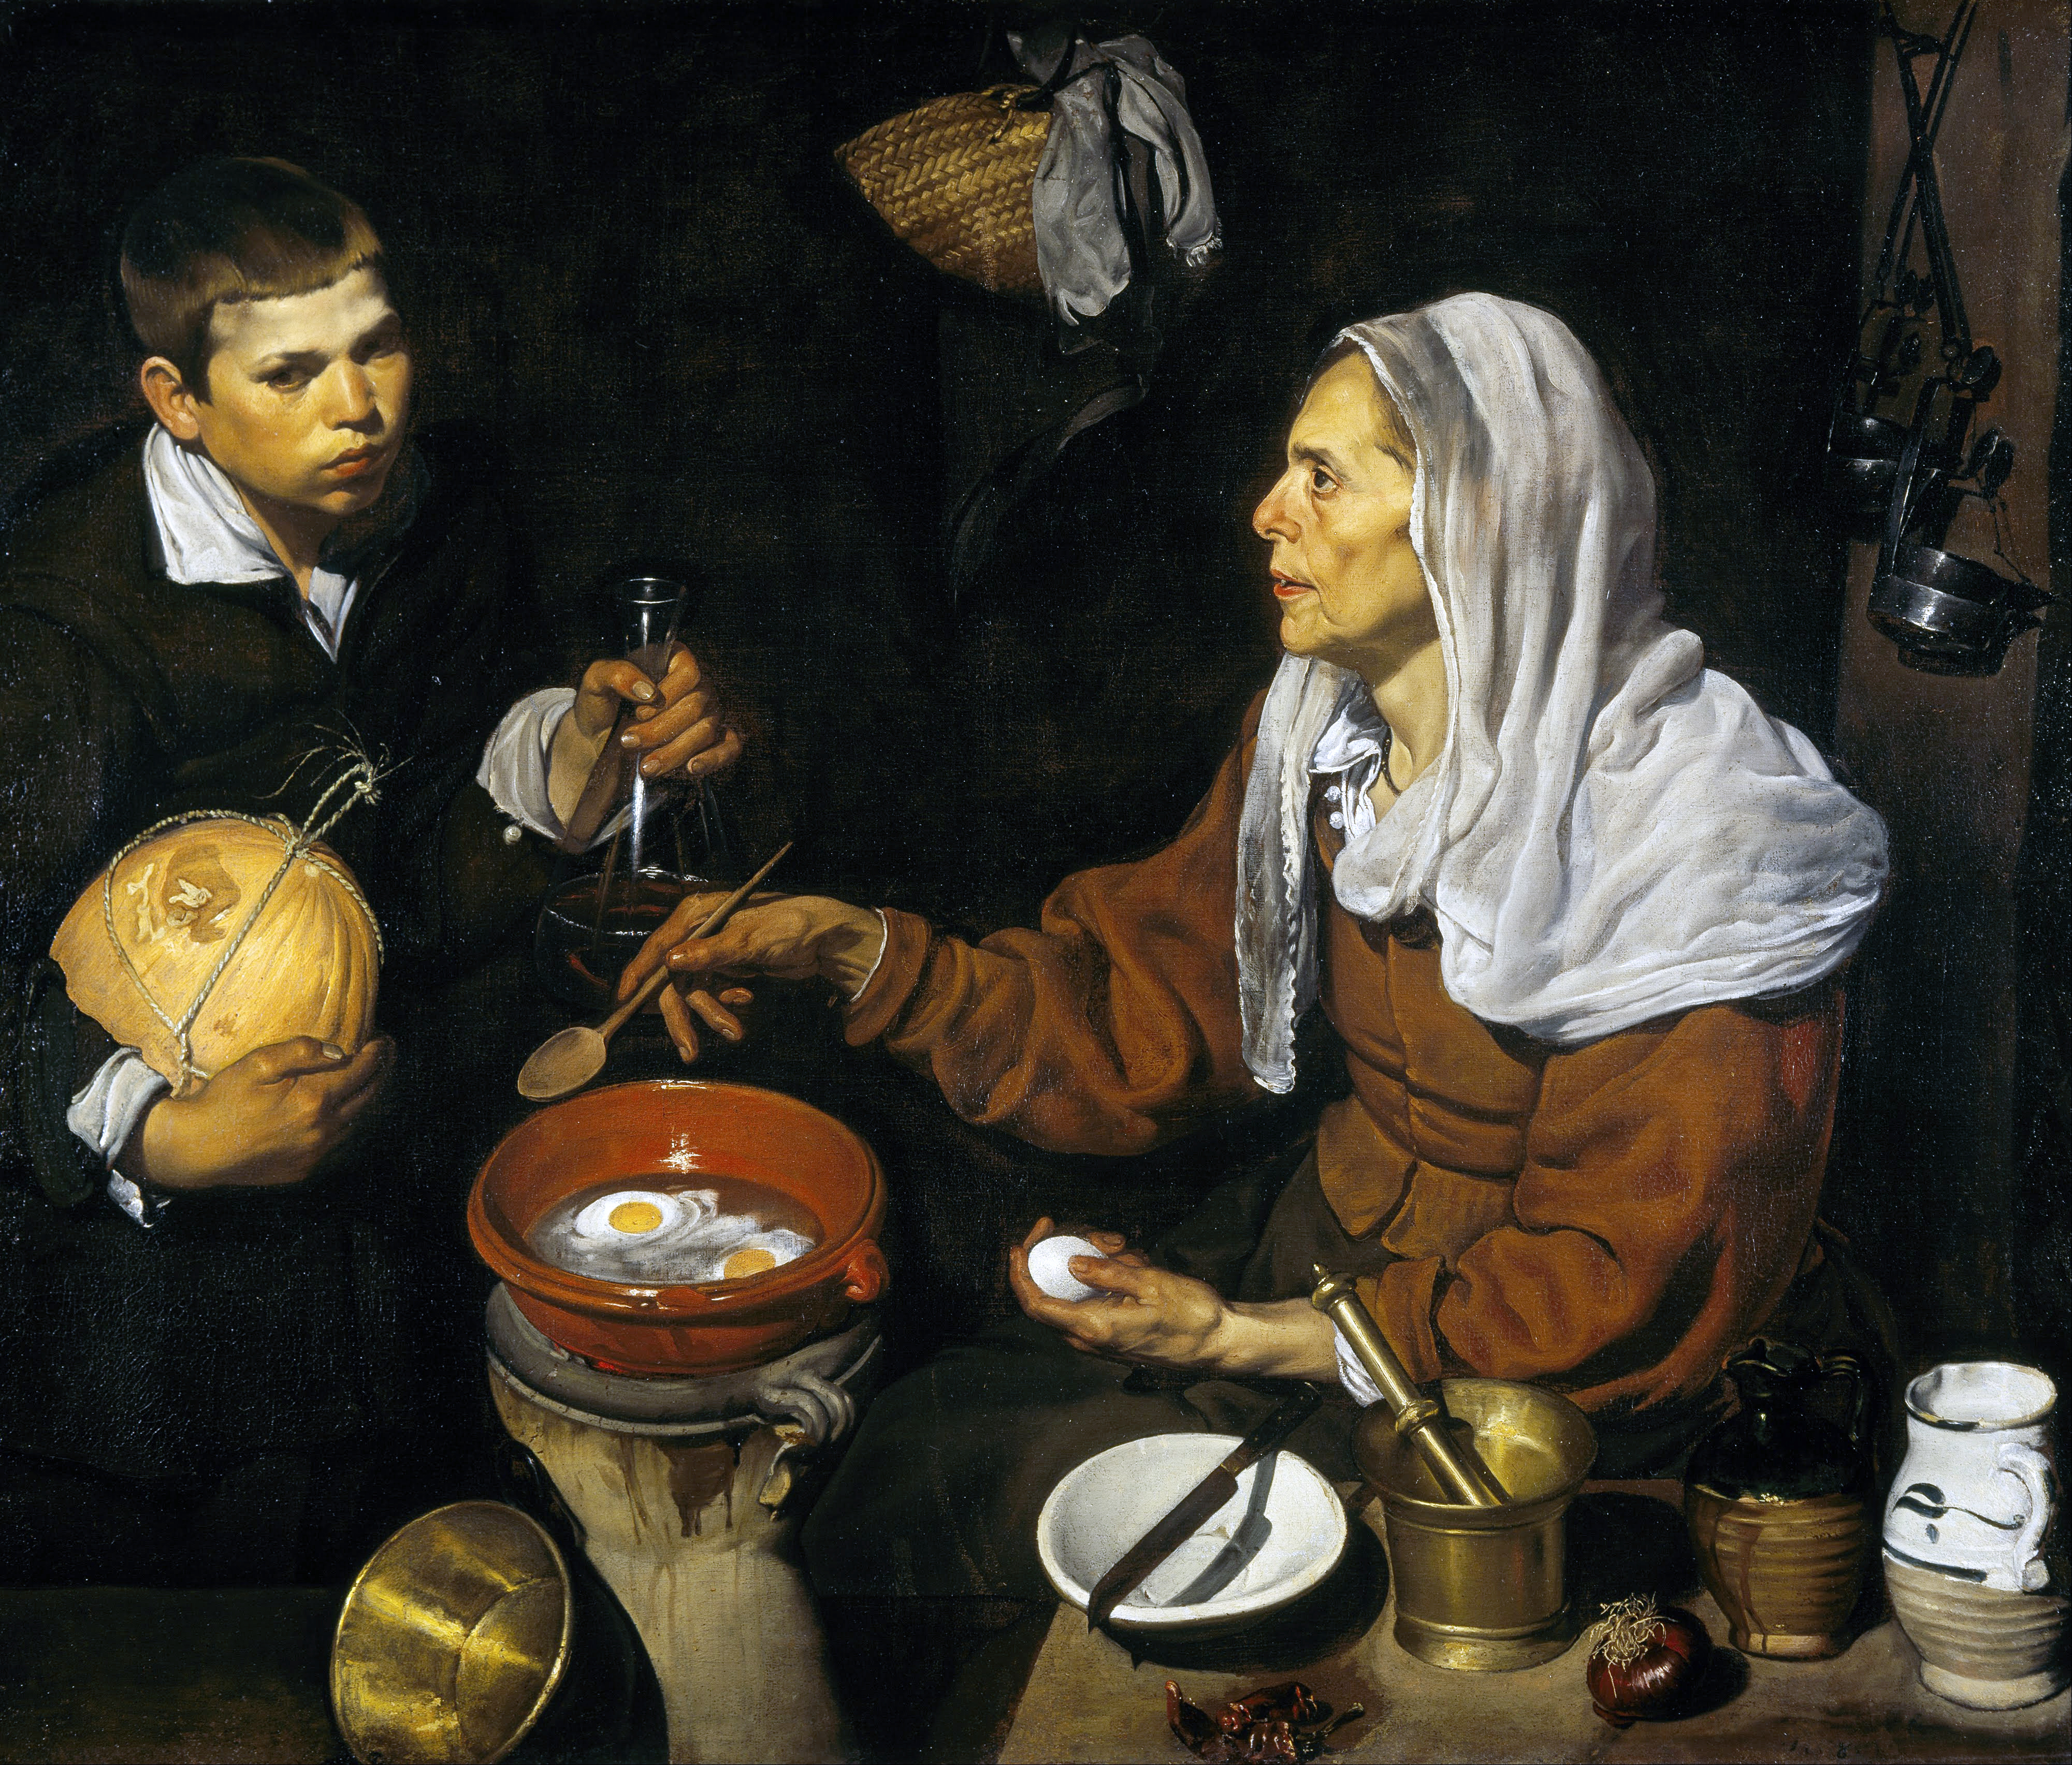 Diego Velazquez, "Vecchia che frigge le uova" (1618).